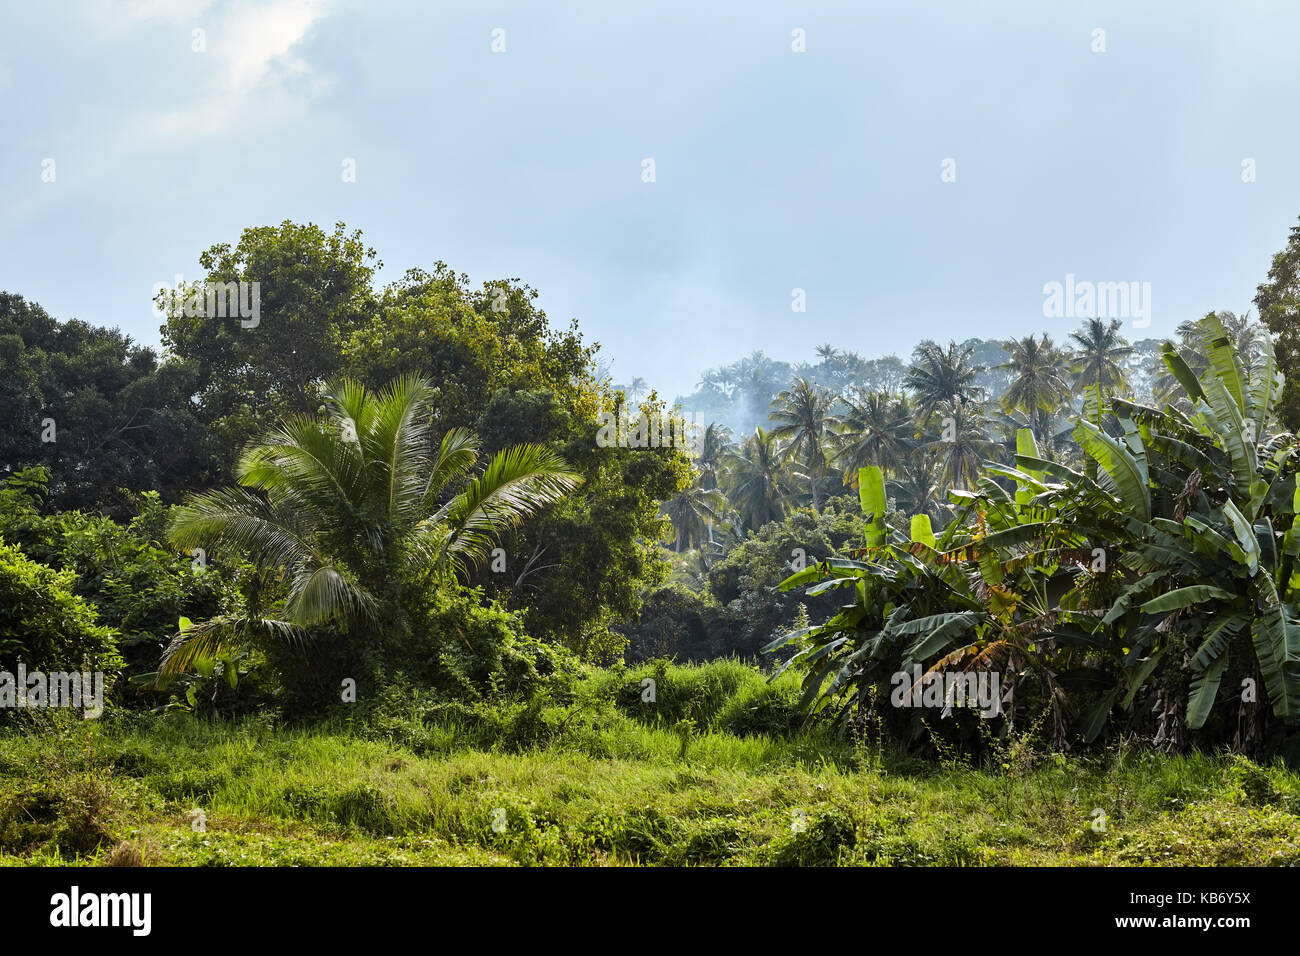 tropical jungle landscape under bright sun Stock Photo